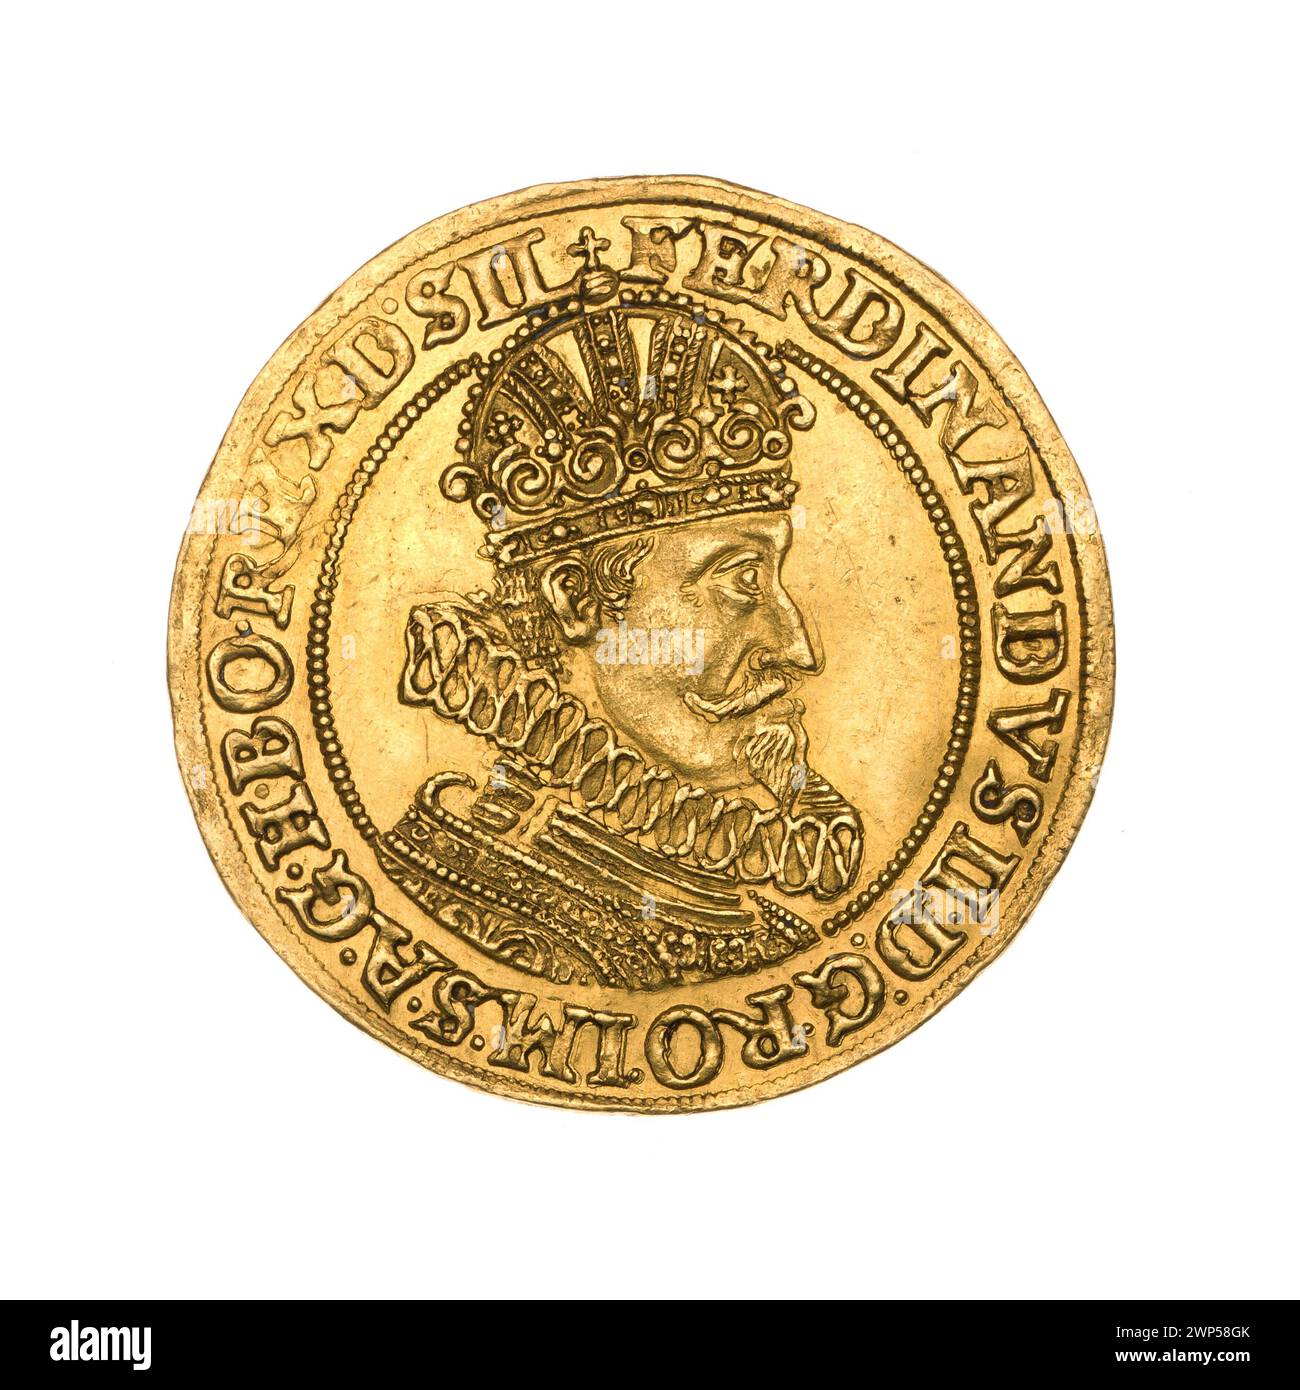 2 ducati; Ferdynand III Asburgo (imperatore romano-tedesco; 1637-1657); 1630 (1630-00-00-1630-00-00); Ferdinando III (imperatore romano-tedesco-1627-1657), Ferdynand III (imperatore romano-tedesco-1627-1657)-iconografia, Asburgo (famiglia), peso della giustizia (iconogr.), Wrocław (stemma), Krunty (iconogr.) , Stemma urbano (iconogr.), monete cittadine, busto, busto maschile, busto maschile in crisi, busto maschile in armatura, ritratto maschile a destra, ritratti, ritratti dei sovrani, scudo a quattro binari con campo cardiaco, stemma, stemma, stemma della città di Wrocław , scudi, bilance Foto Stock